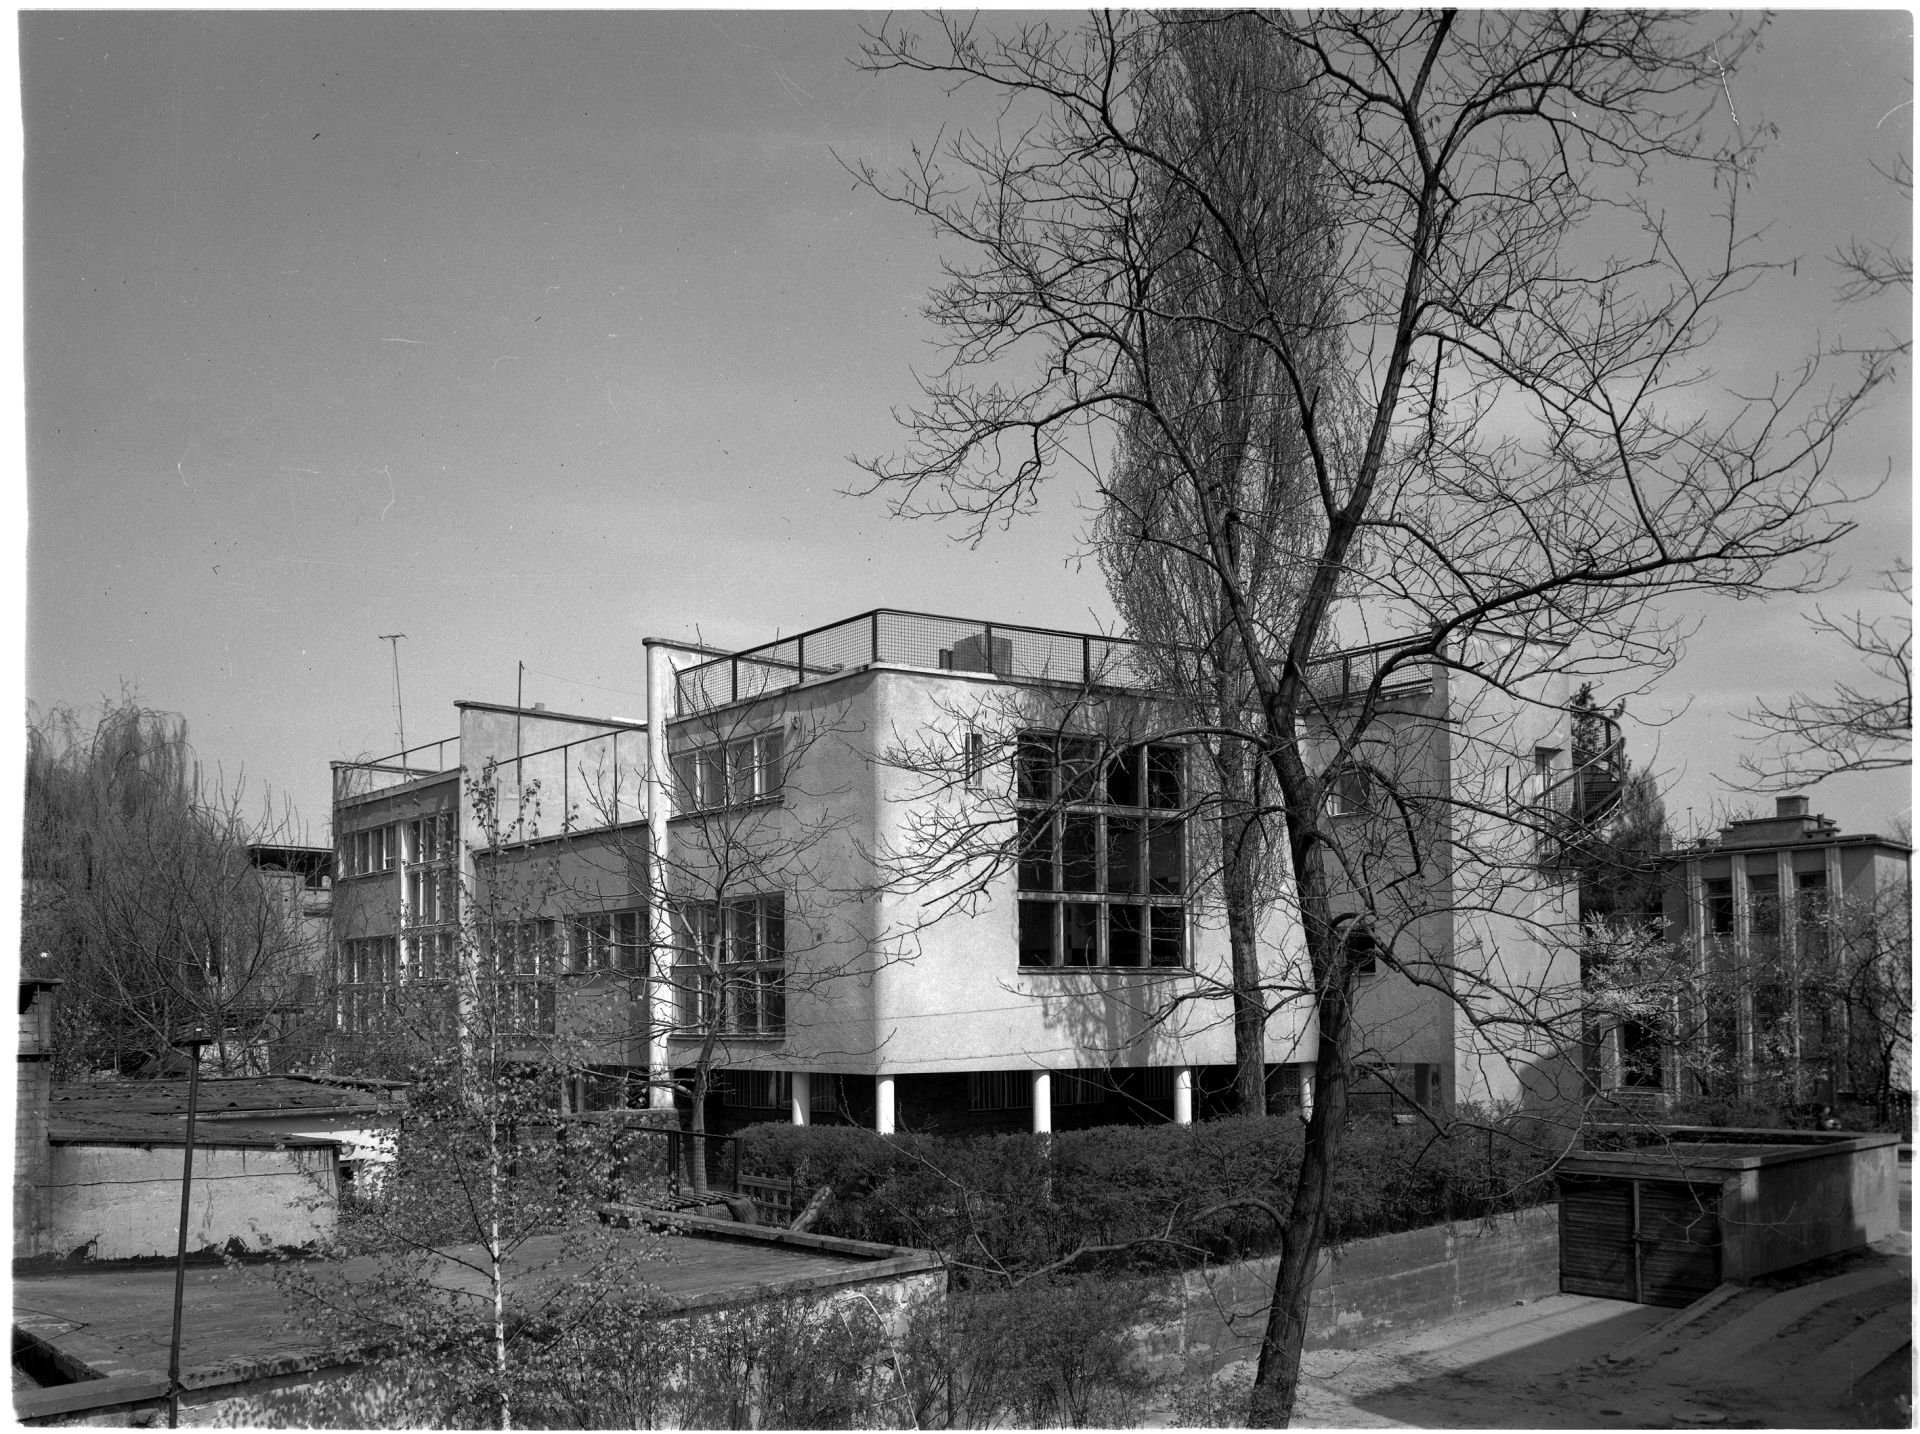 Dom własny, Katowicka 9, fot. W. Wolny, 1972, zbiory IS PAN (źródło: materiały prasowe organizatora)